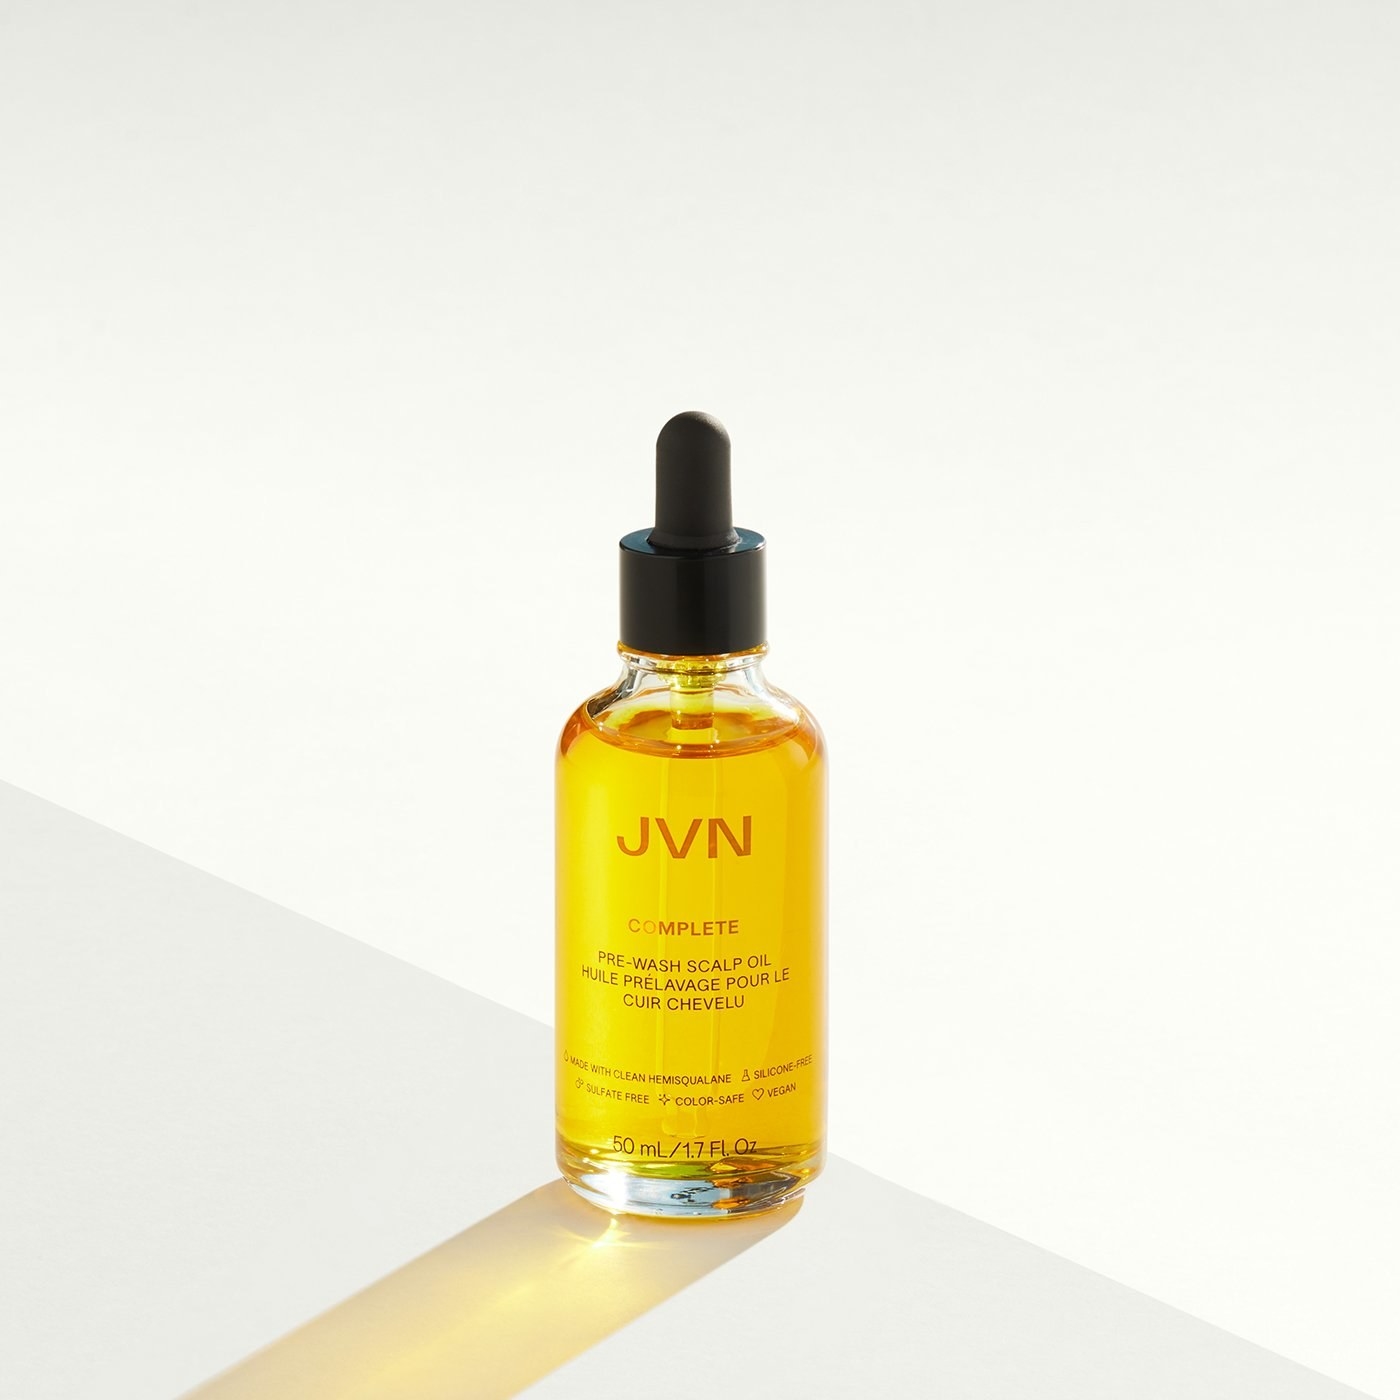 JVN Hair Pre-Wash Scalp Oil in bottle